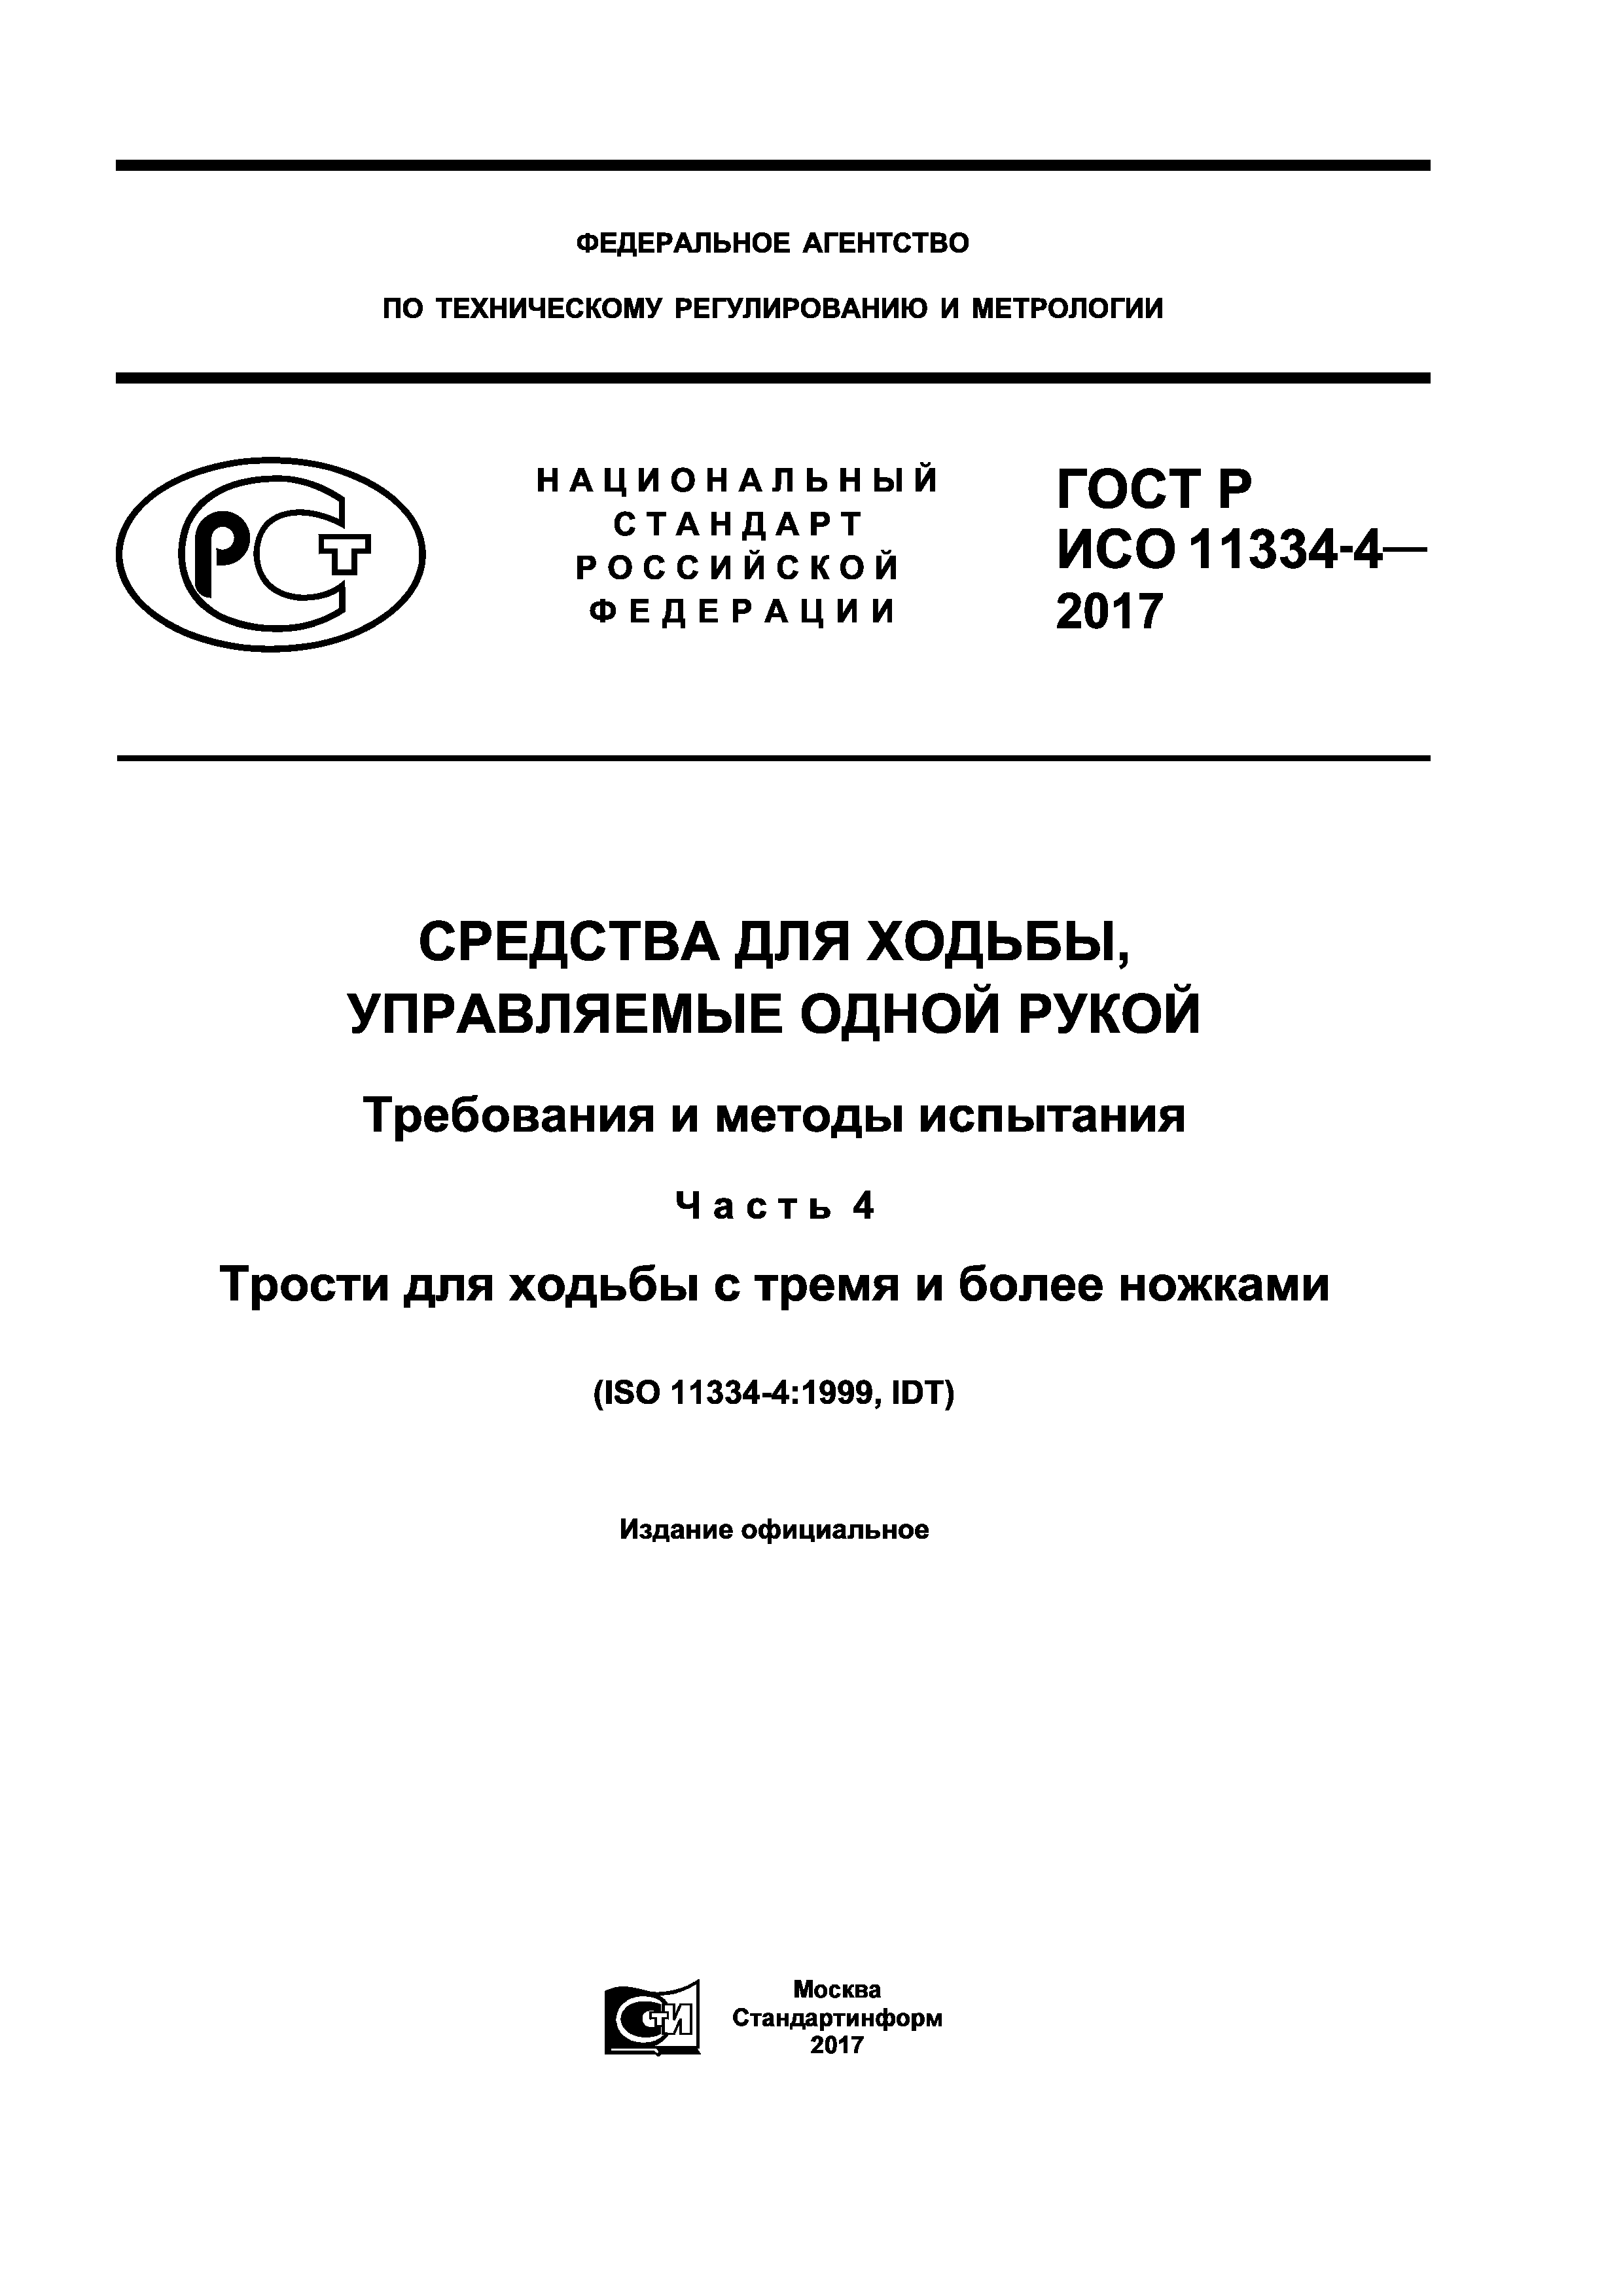 ГОСТ Р ИСО 11334-4-2017